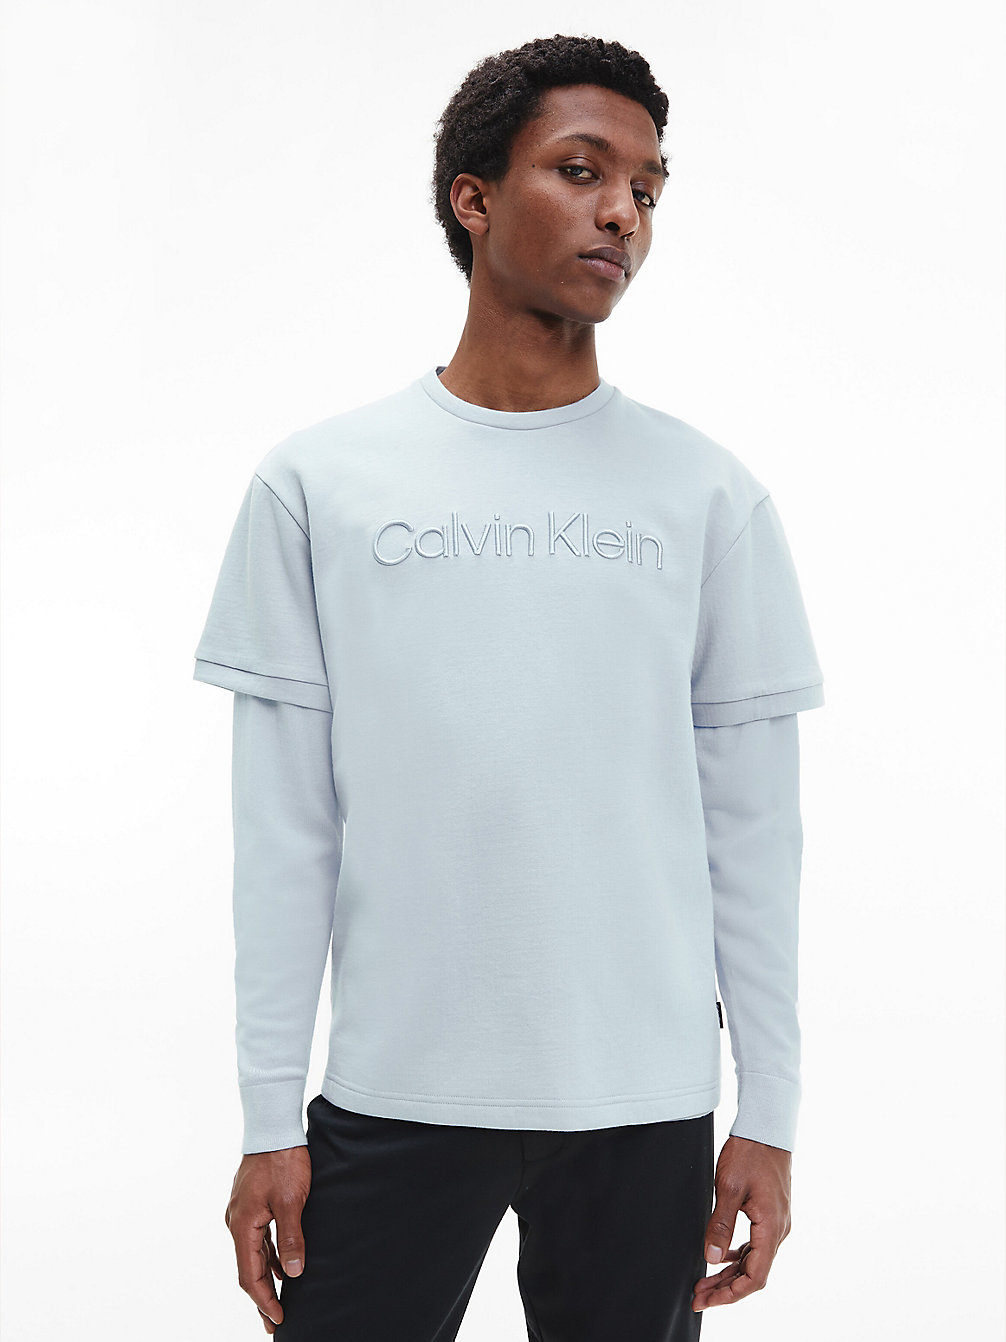 BAYSHORE BLUE Spacer-Logo-T-Shirt undefined Herren Calvin Klein